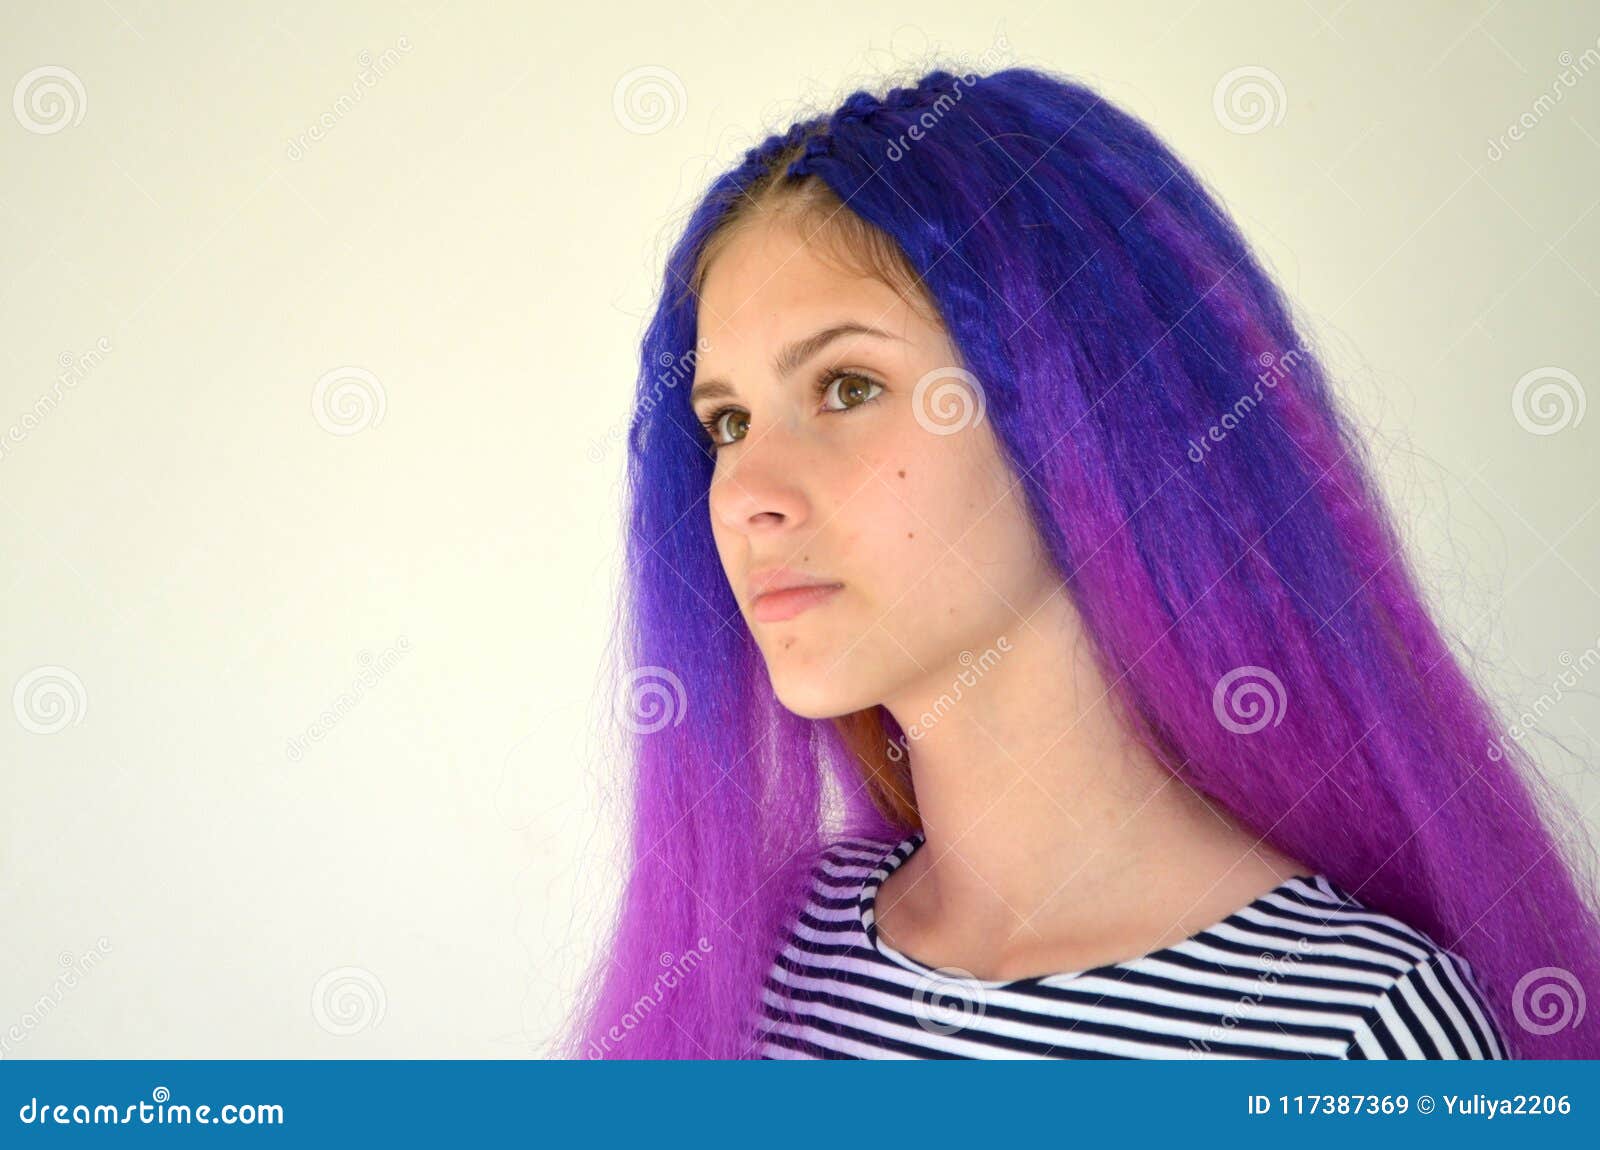 blue hair to purple hair